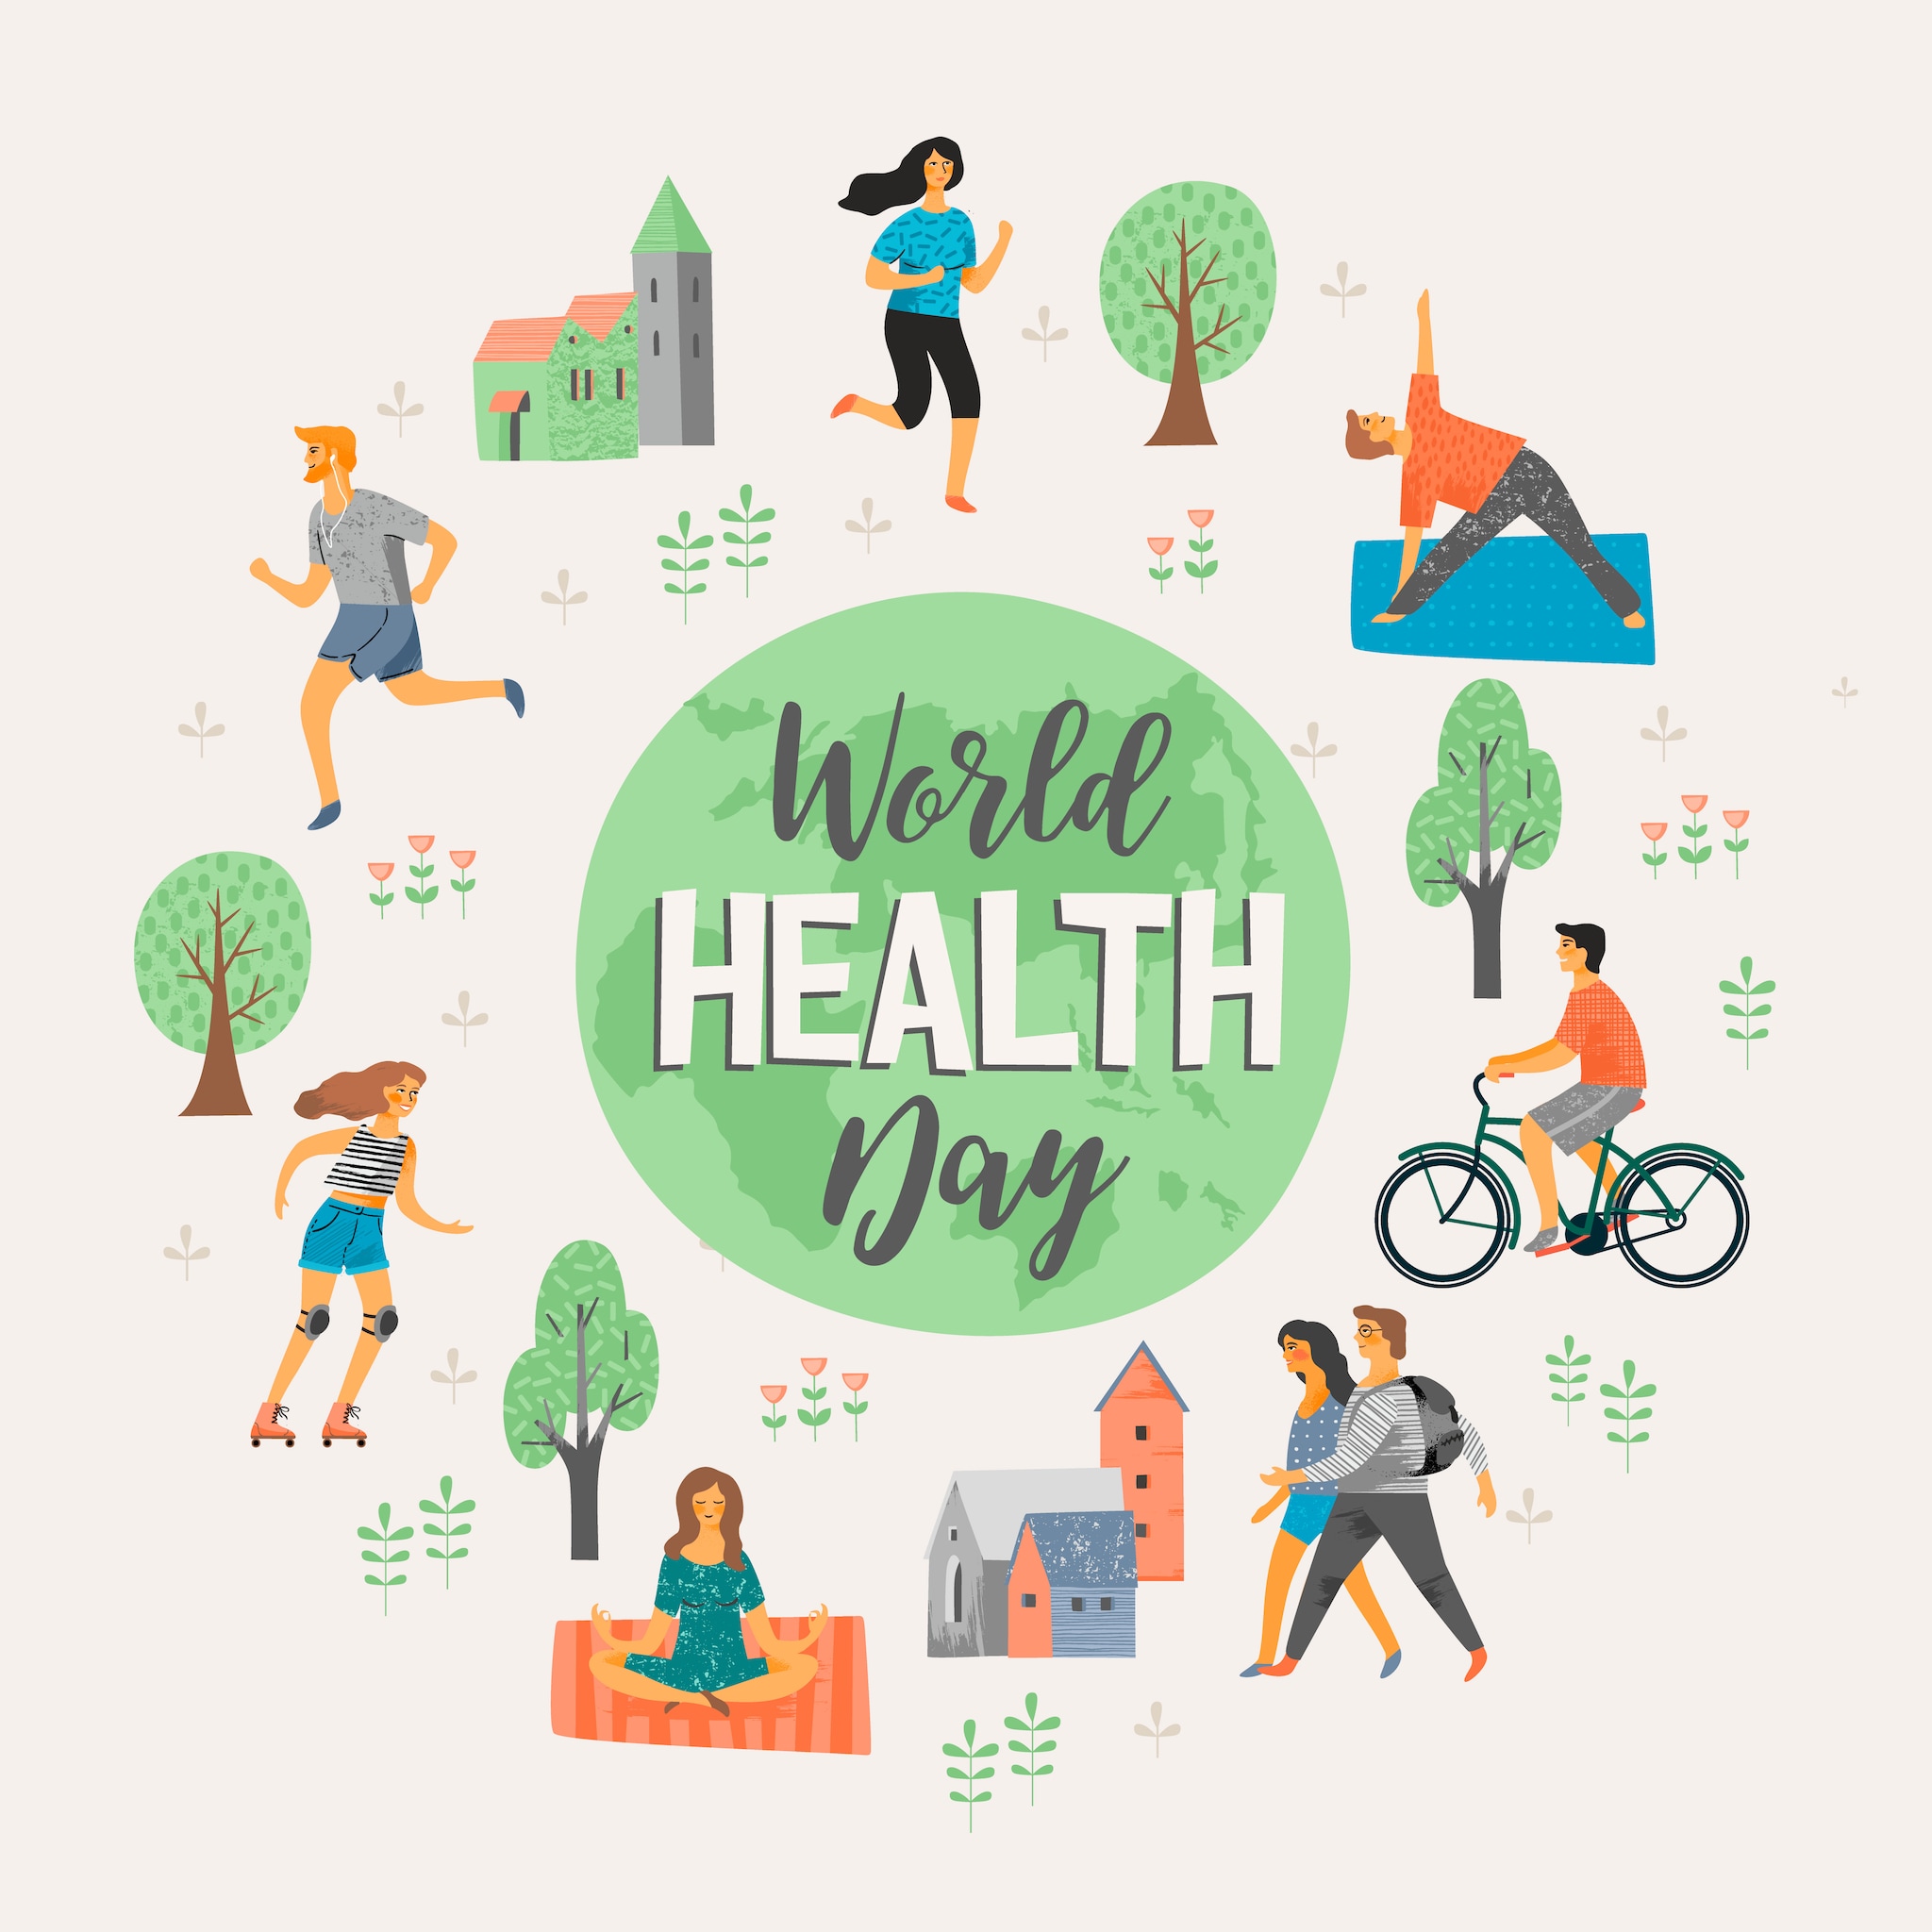 health world health day 2022 message